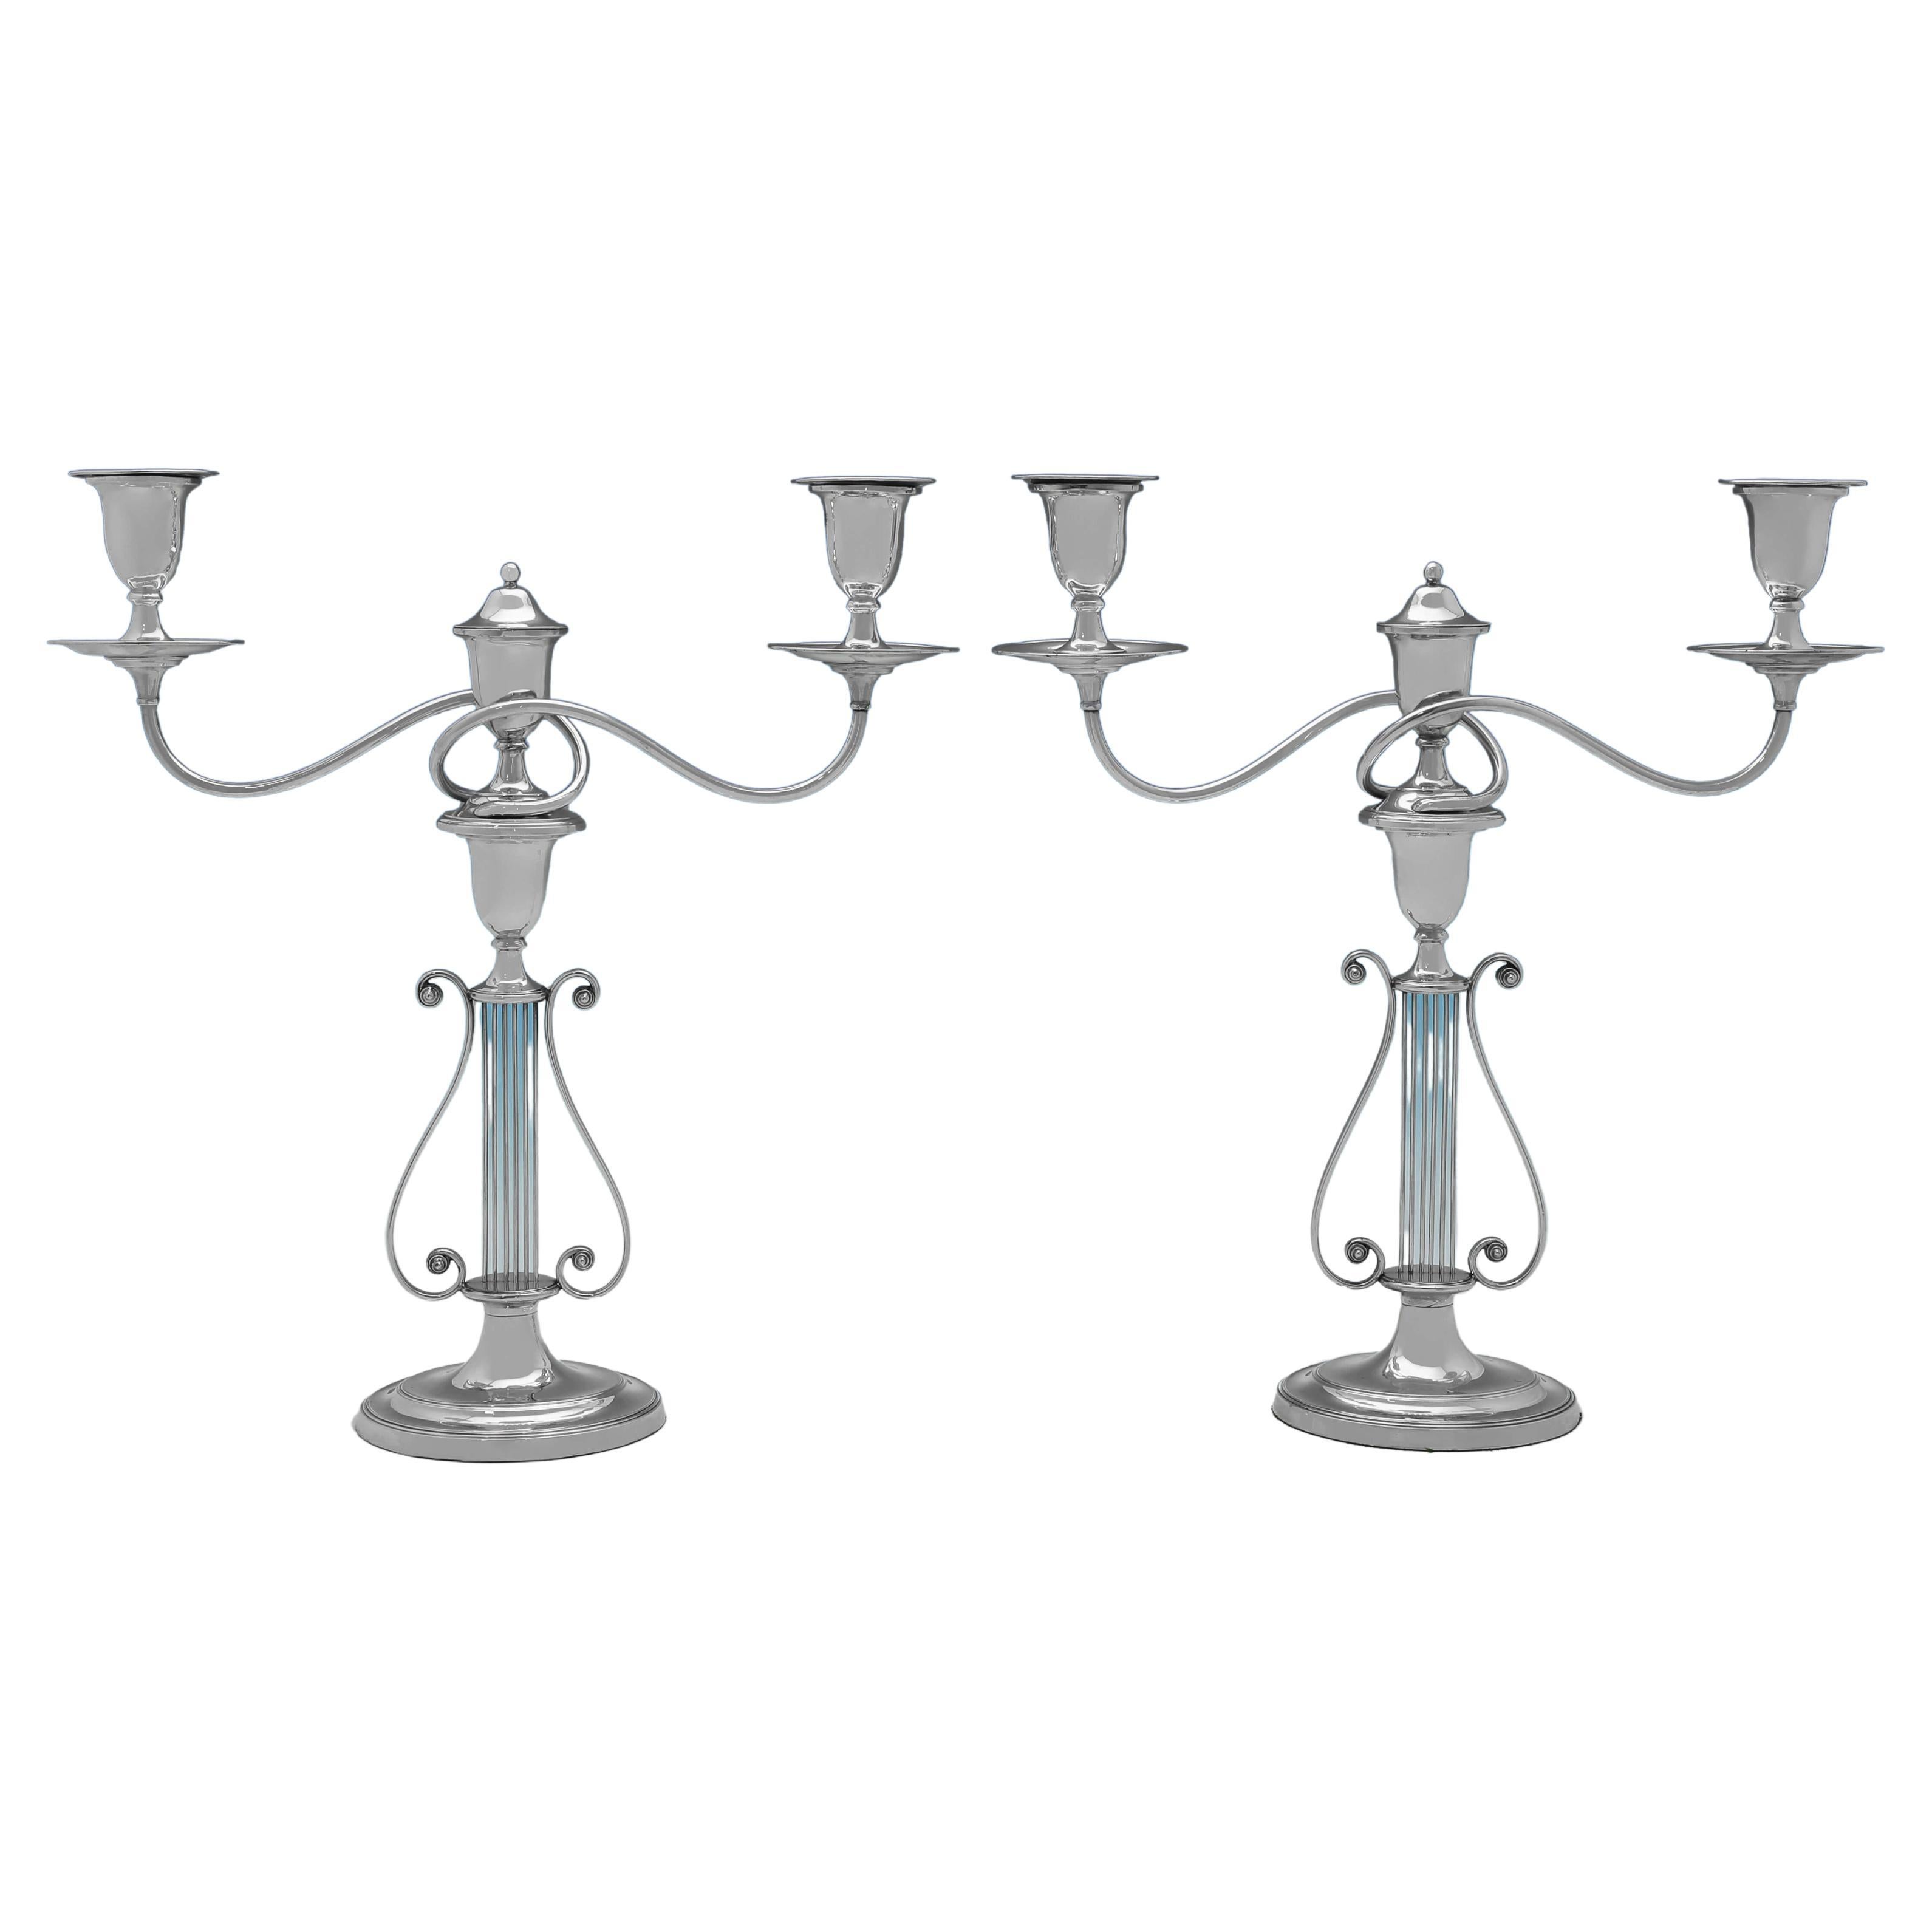 Paire de candélabres victoriens anciens « Lyre » en métal argenté, fabriqués vers 1880